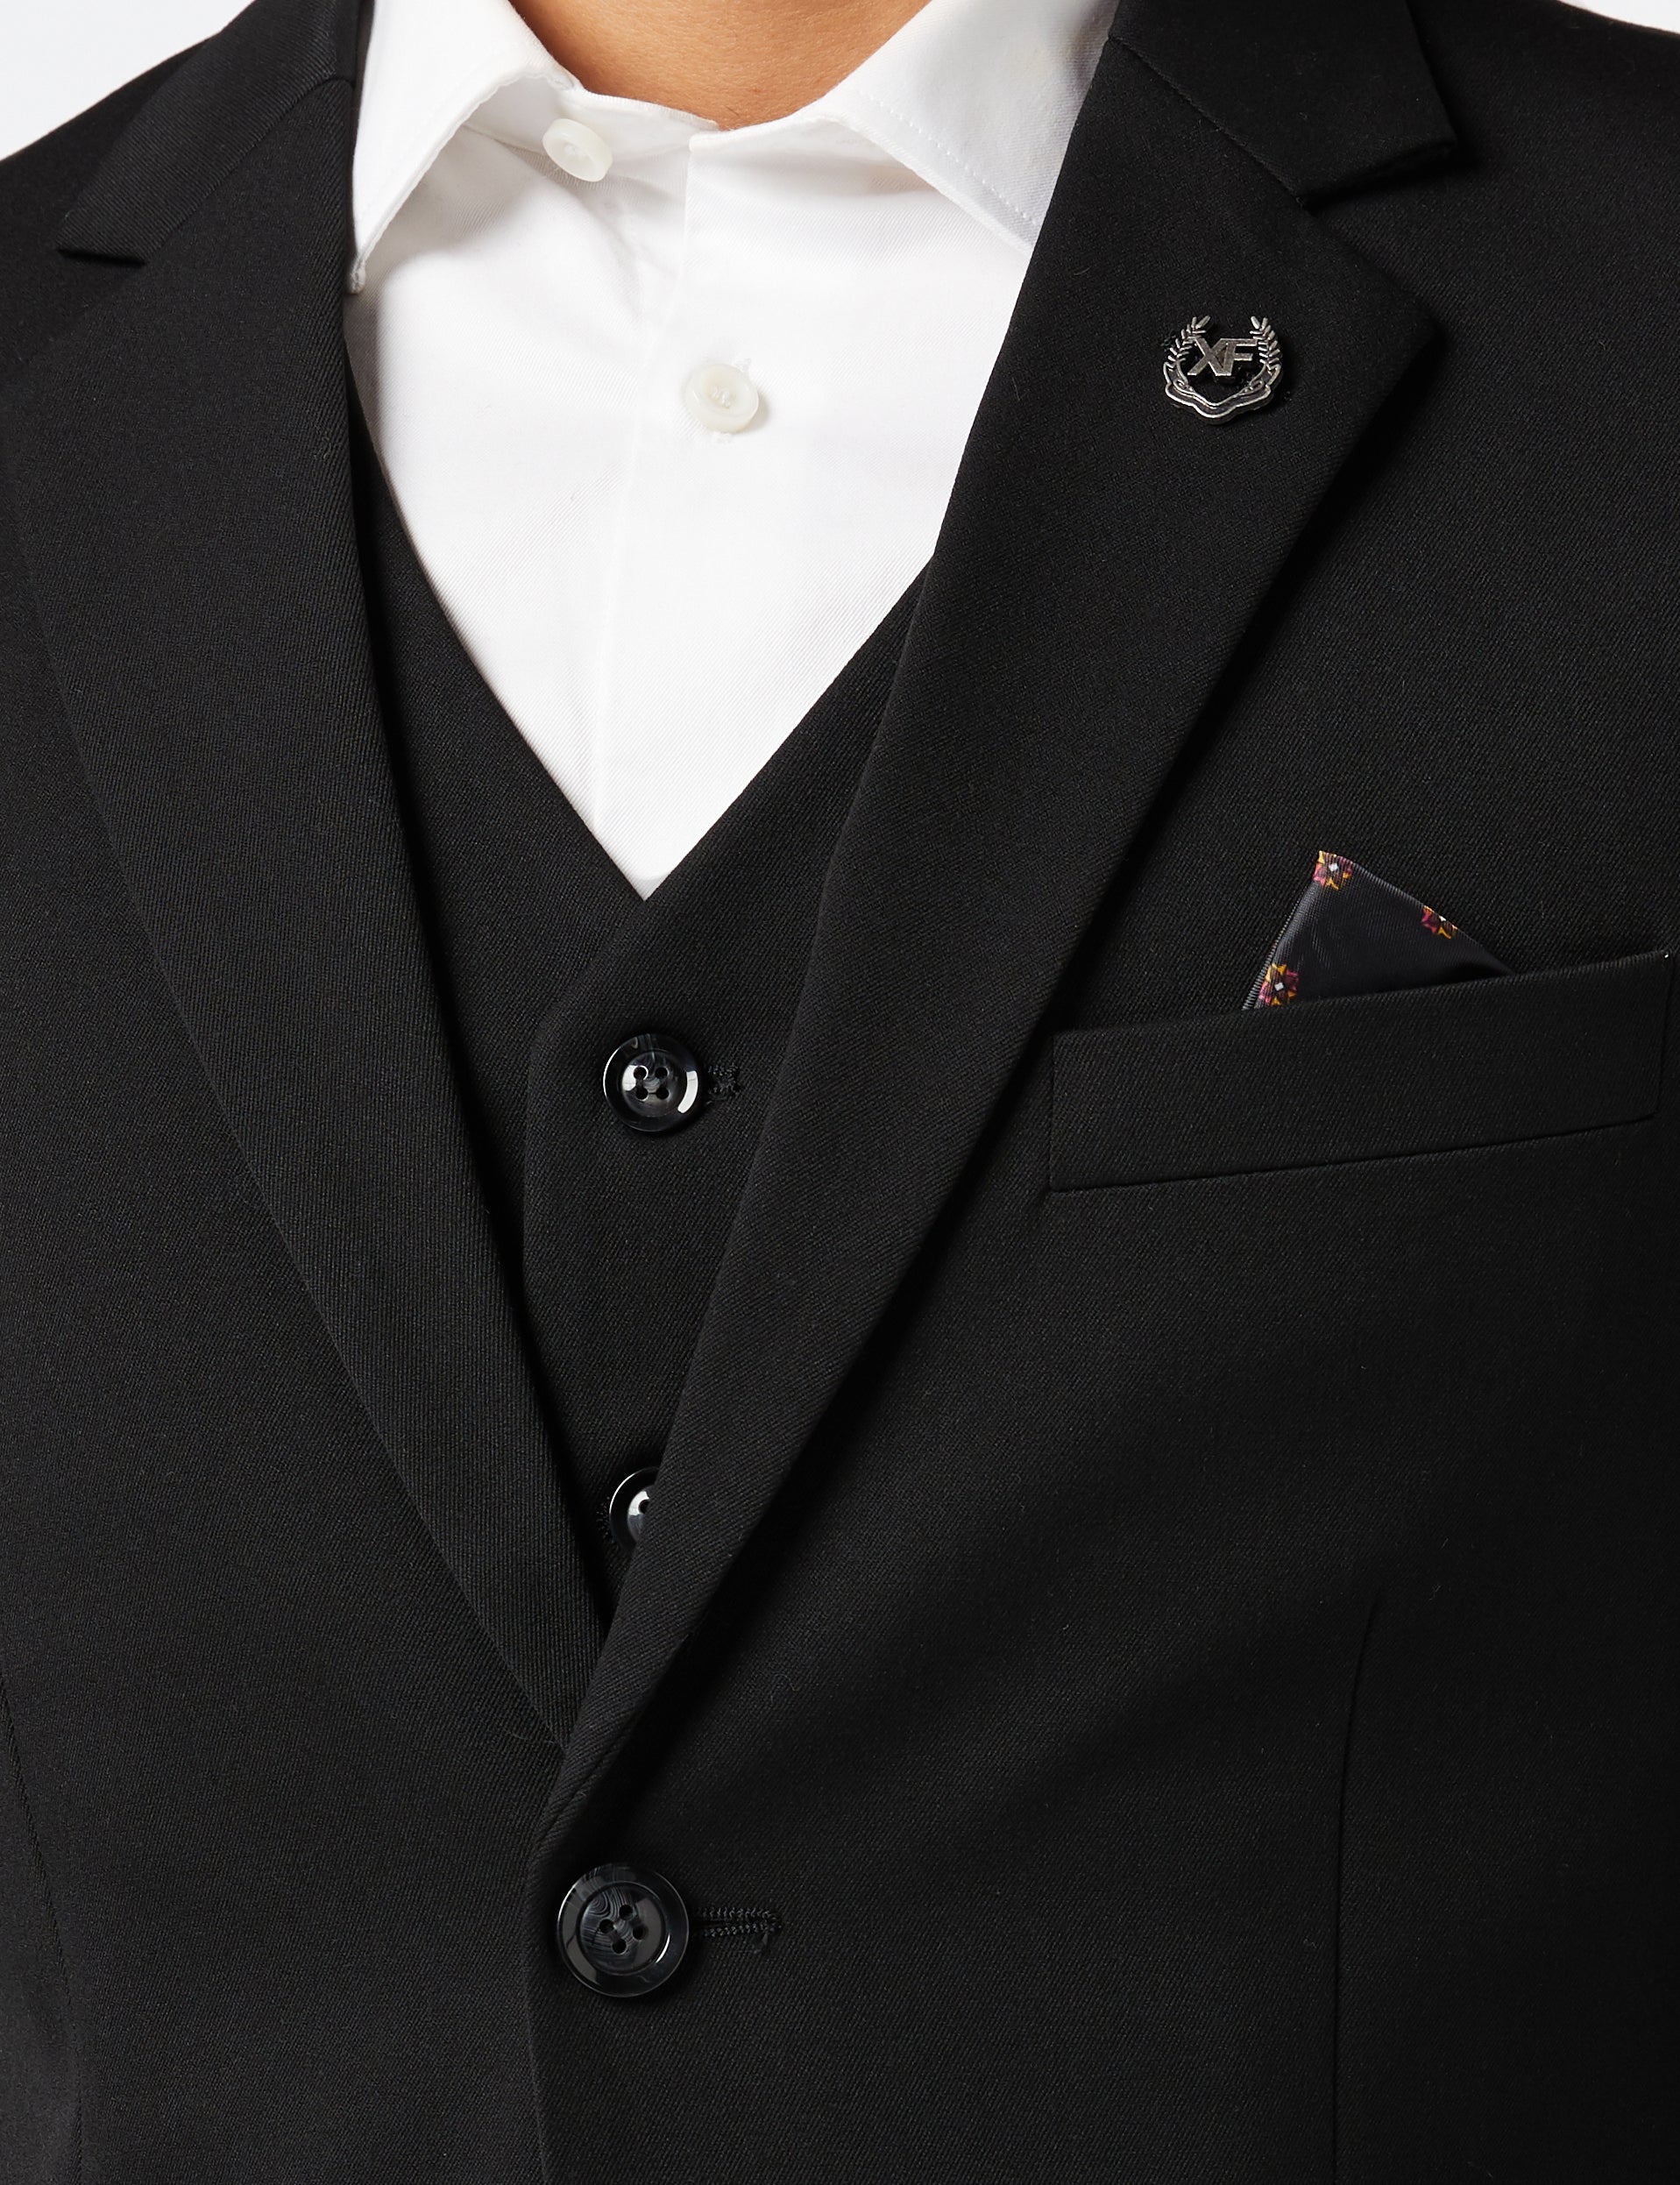 JROSS - Black 3 Piece Formal Business Suit